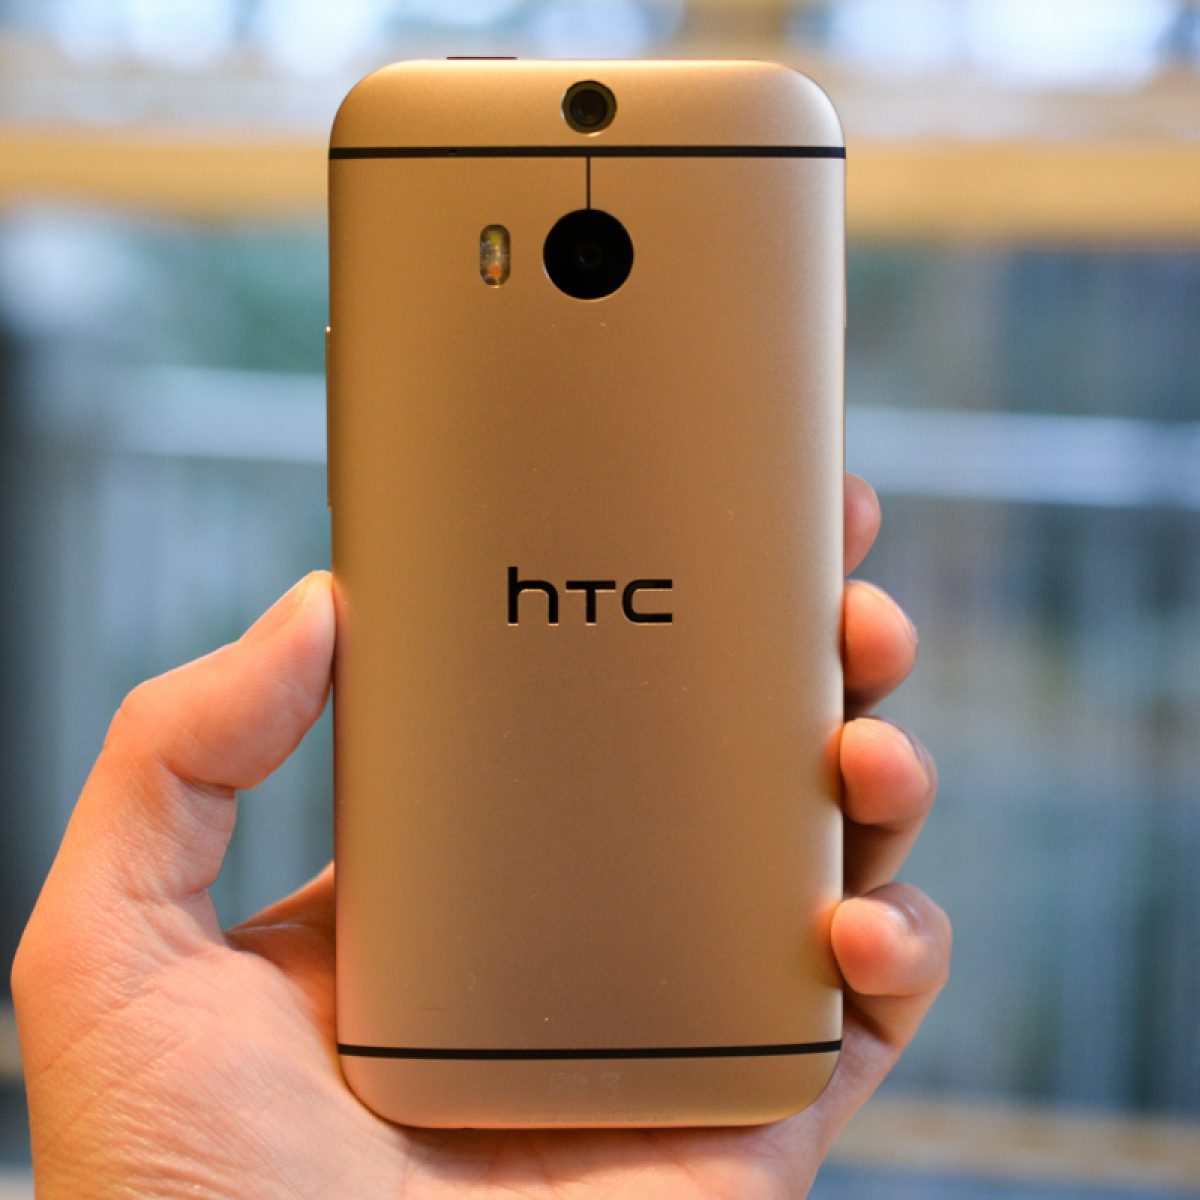 bouwen Berri Reparatie mogelijk HTC One (M8) vs. HTC One (M9) "Hima"